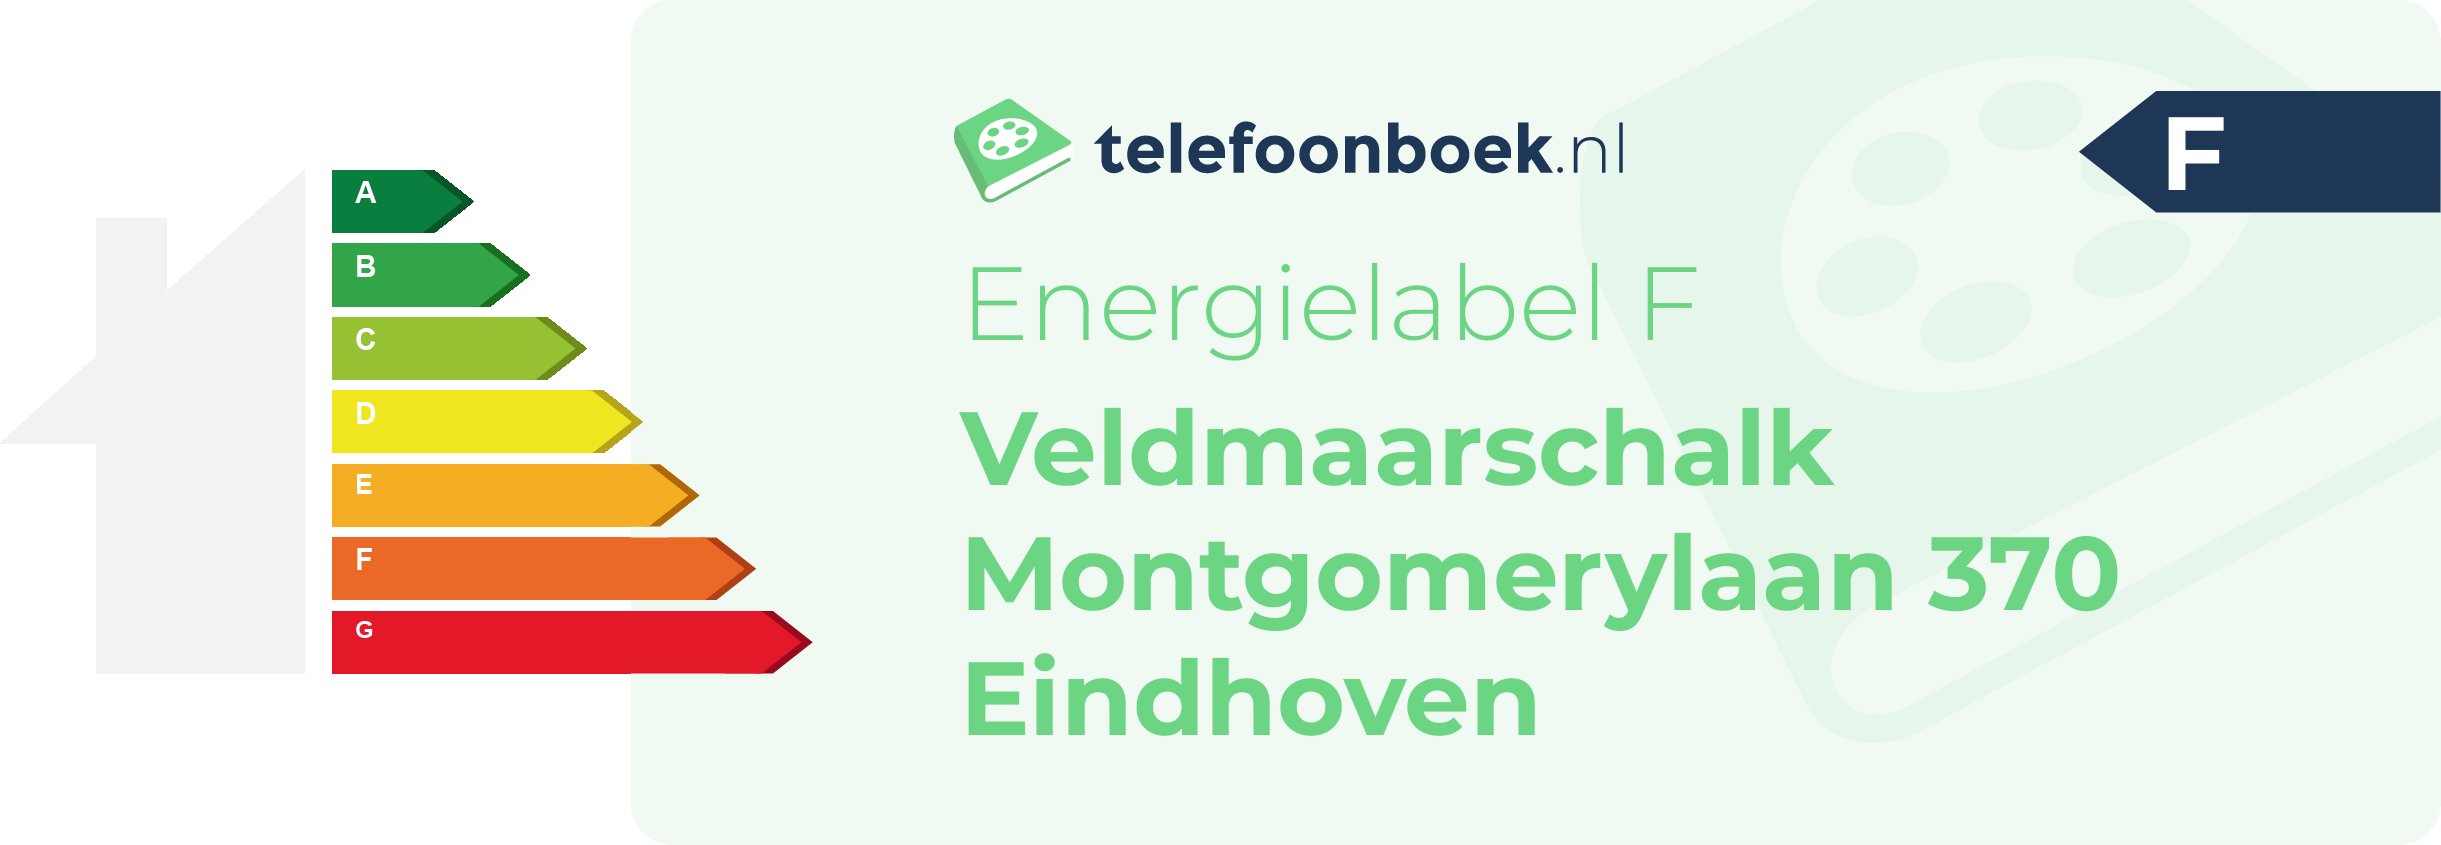 Energielabel Veldmaarschalk Montgomerylaan 370 Eindhoven